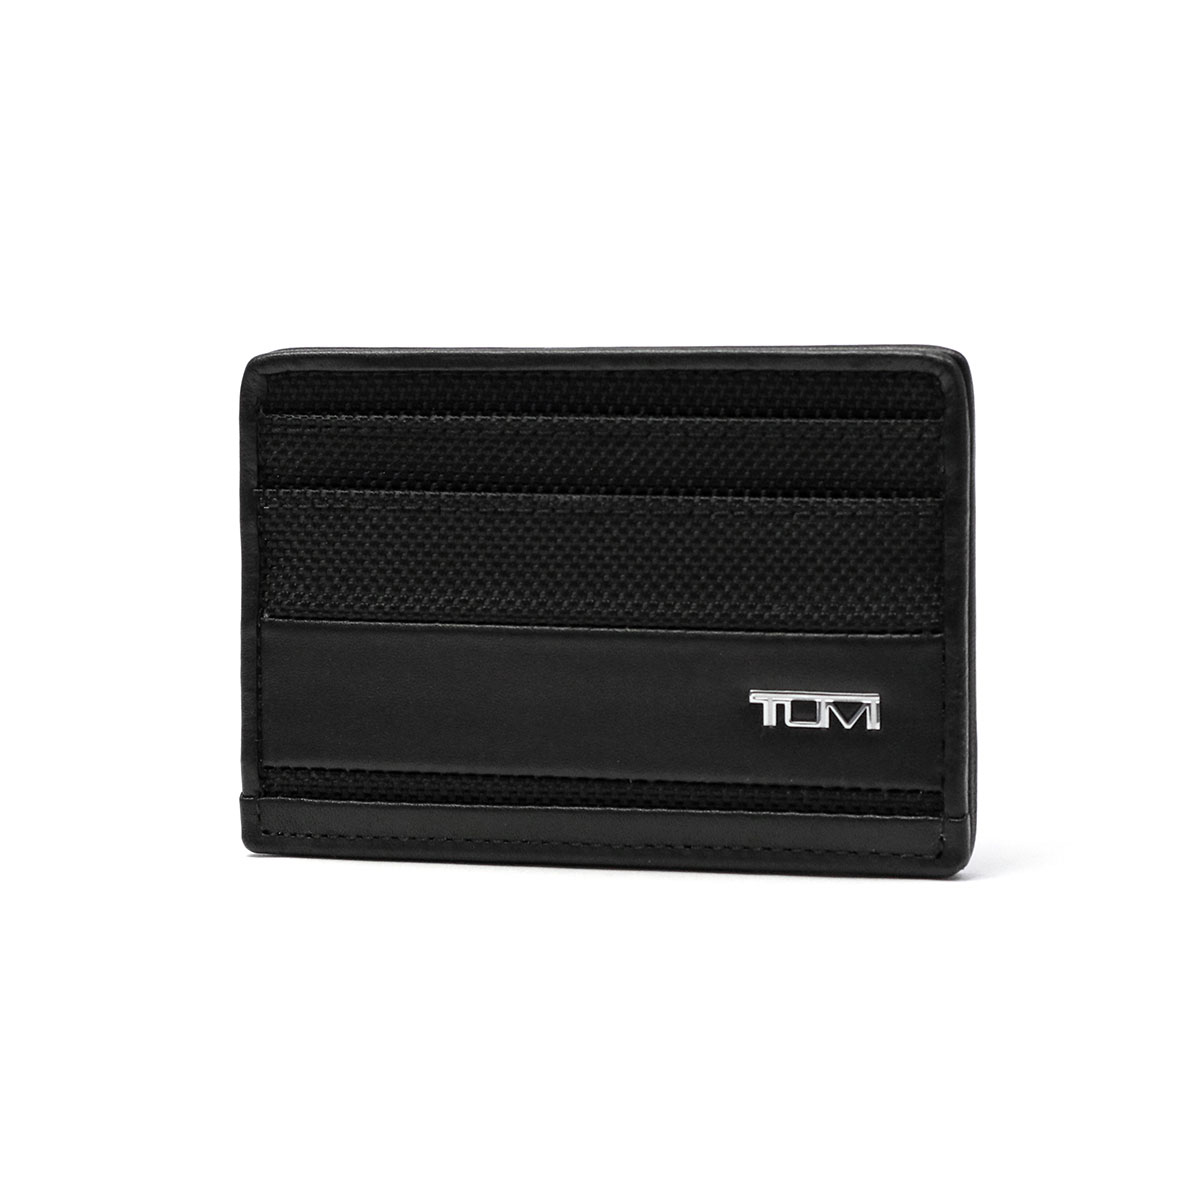 正規品2年保証 トゥミ カードケース TUMI ALPHA SLG Slim Card Case スリム・カード・ケース パスケース メンズ ビジネス  01192259